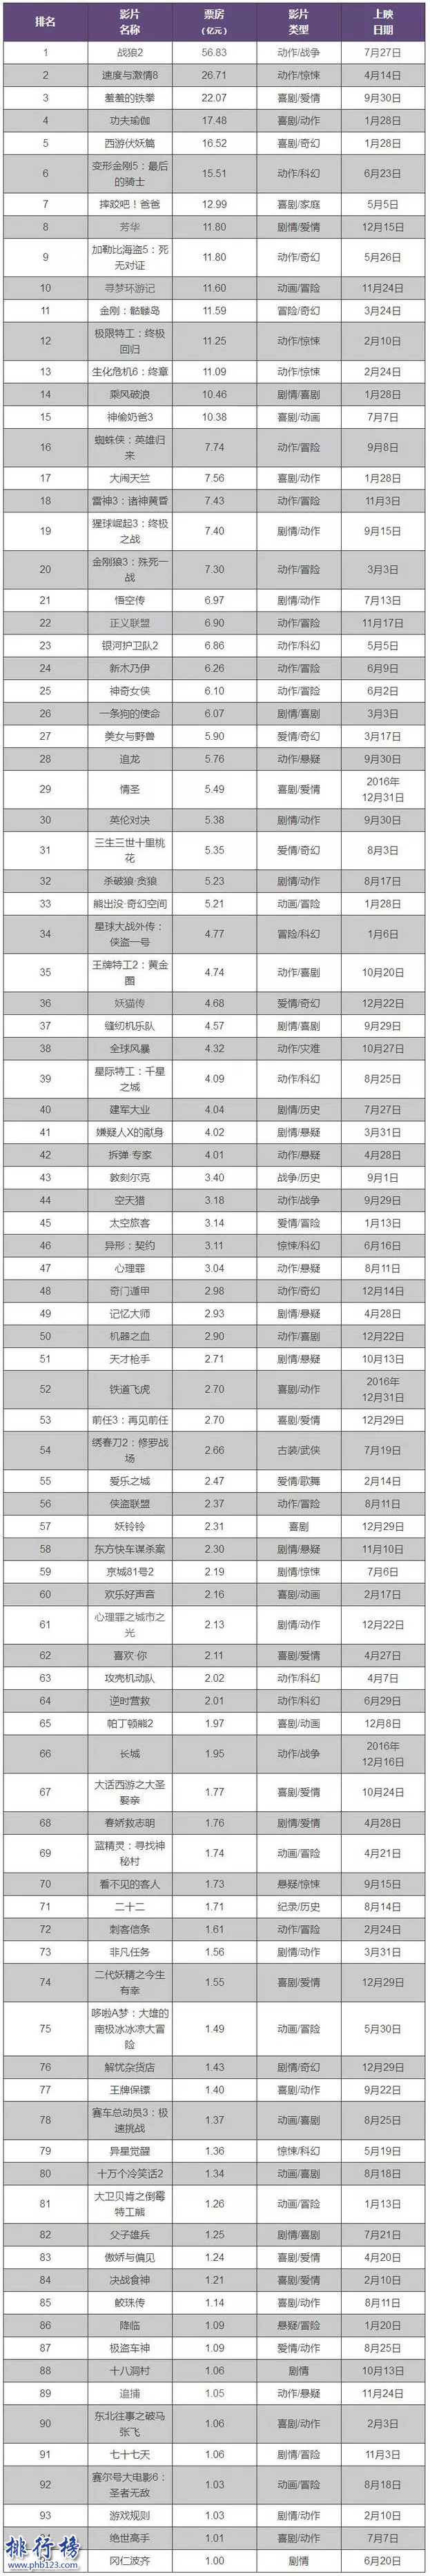 2017年中國電影票房排行榜:戰狼2 56.83億奪冠(附完整榜單)